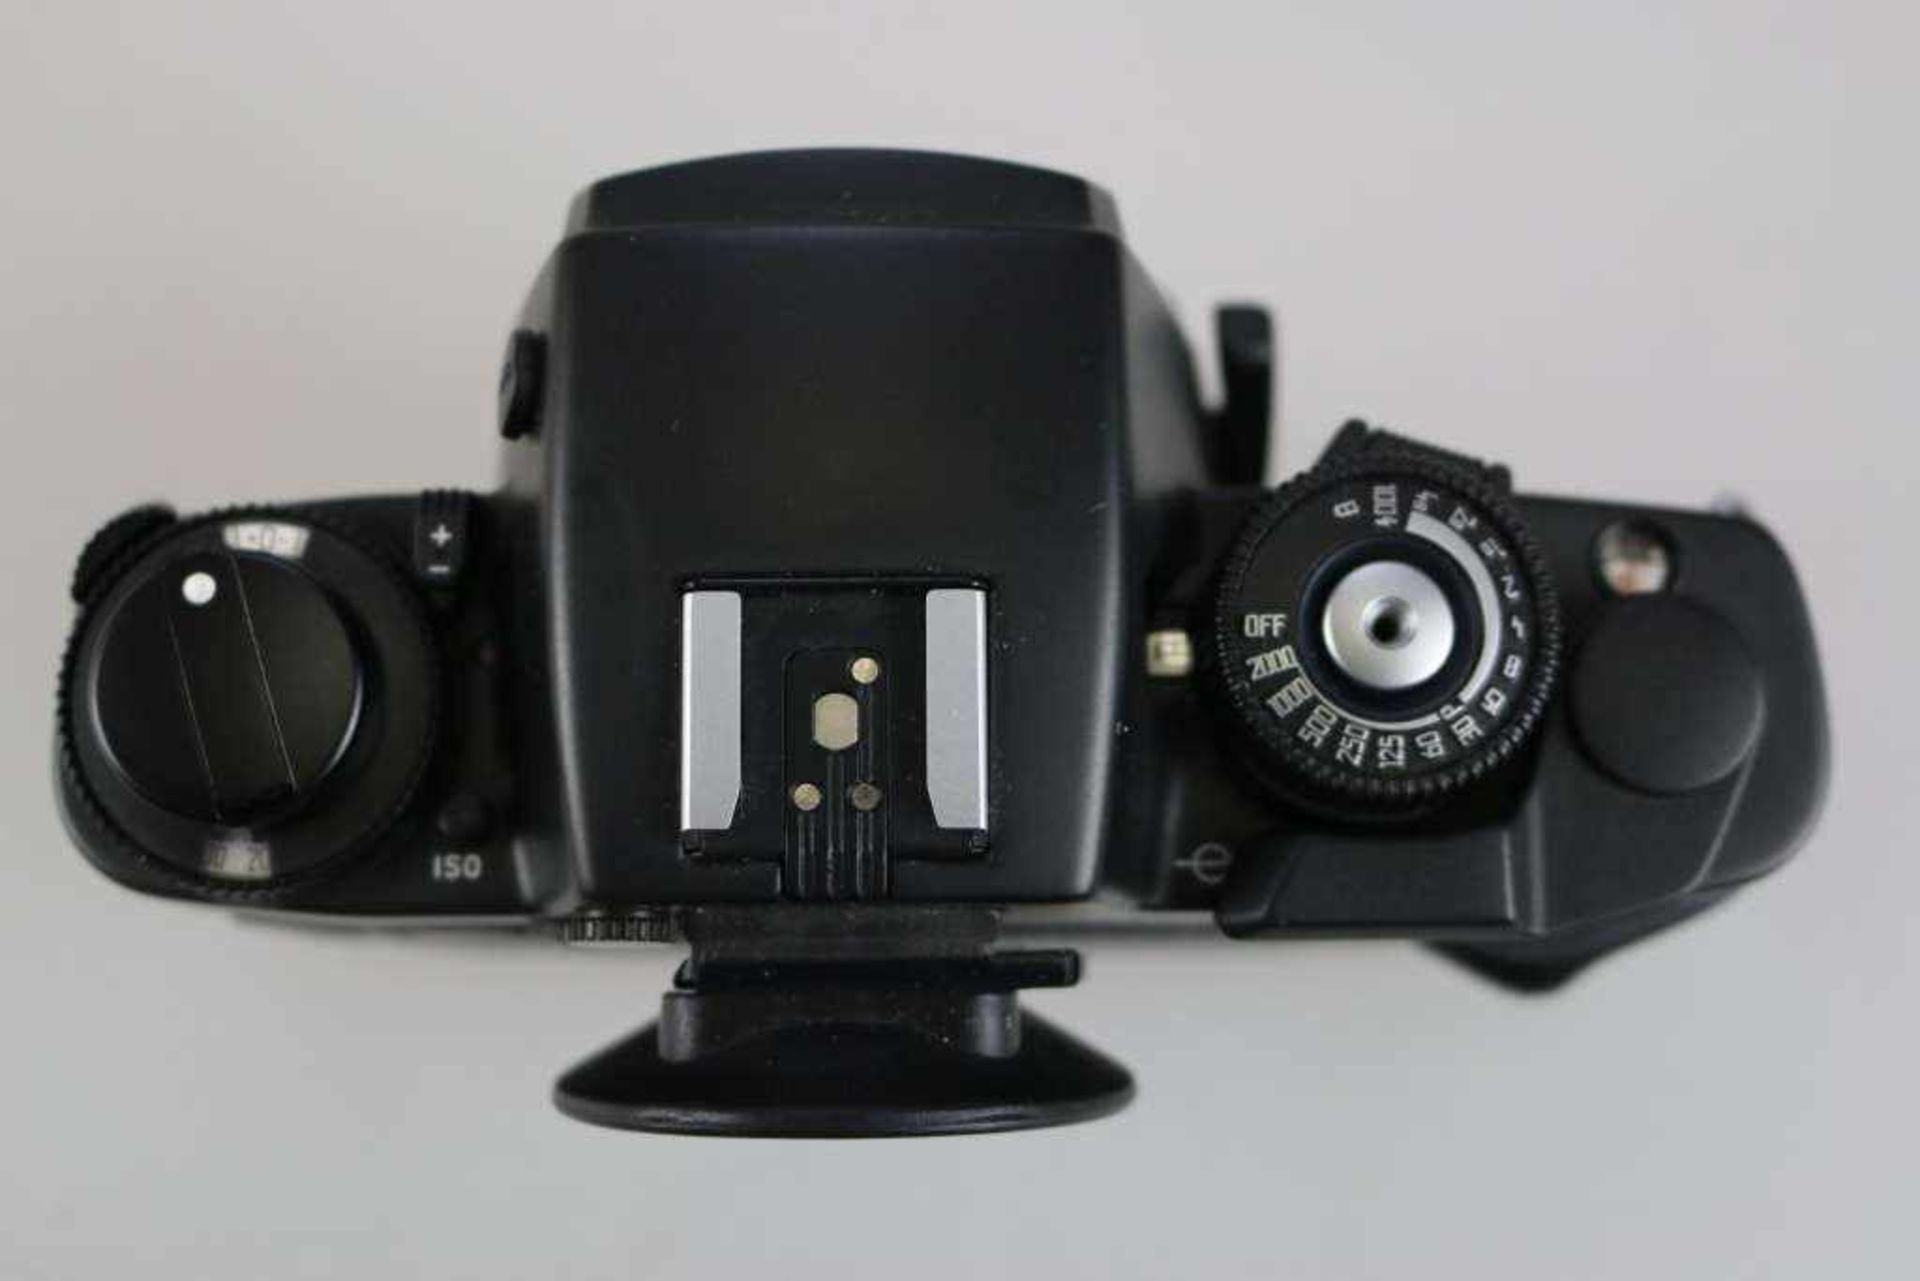 LEICA R7 (1992-1997), gut erhaltenes Gehäuse Leica R7 in schwarz, Seriennummer: 1934067. - Bild 3 aus 3